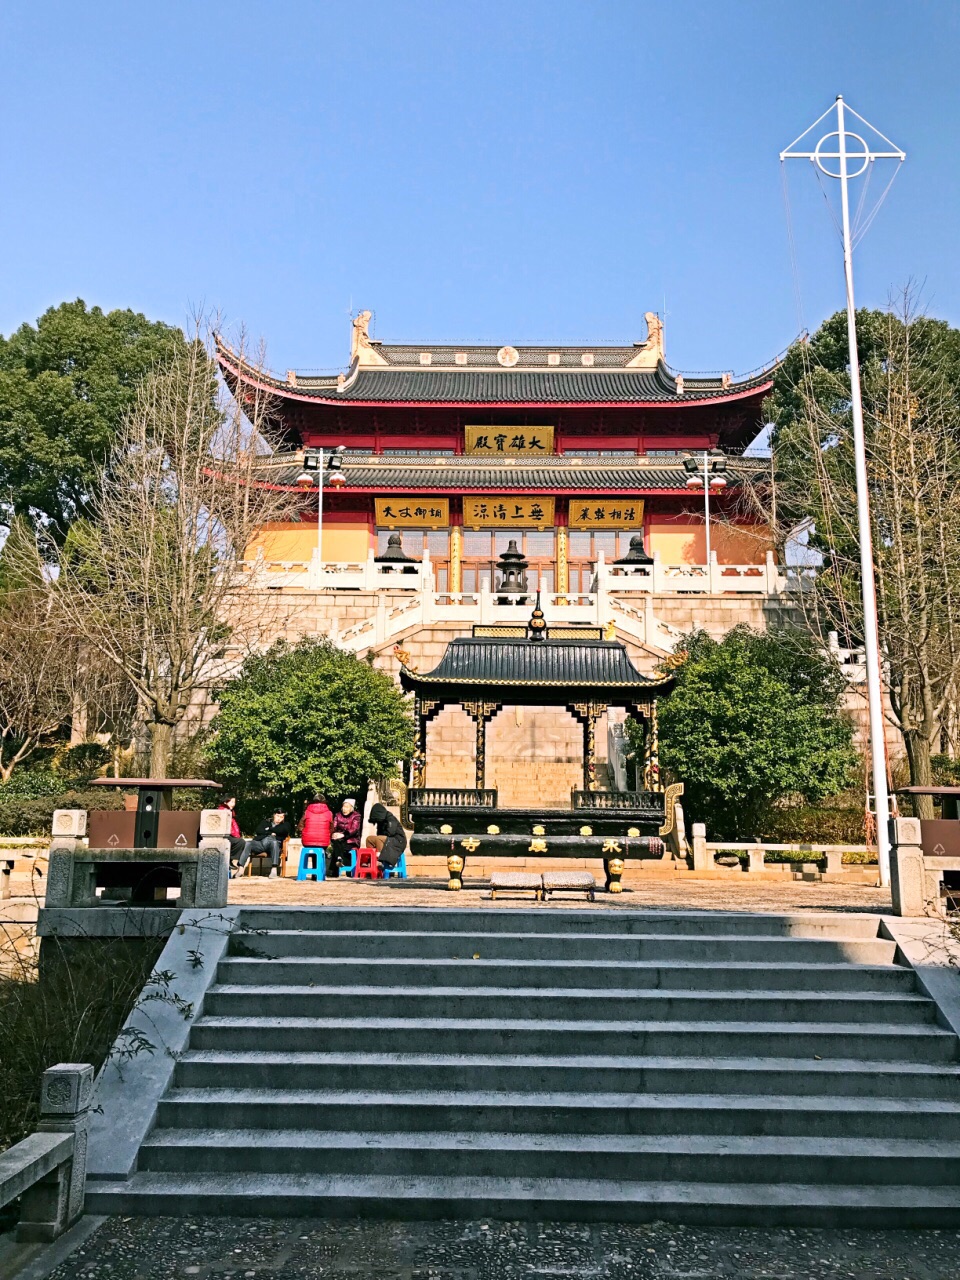 土路低矮的台阶爬上山顶看到永庆寺凤凰湖风景一般一侧下山大片墓区